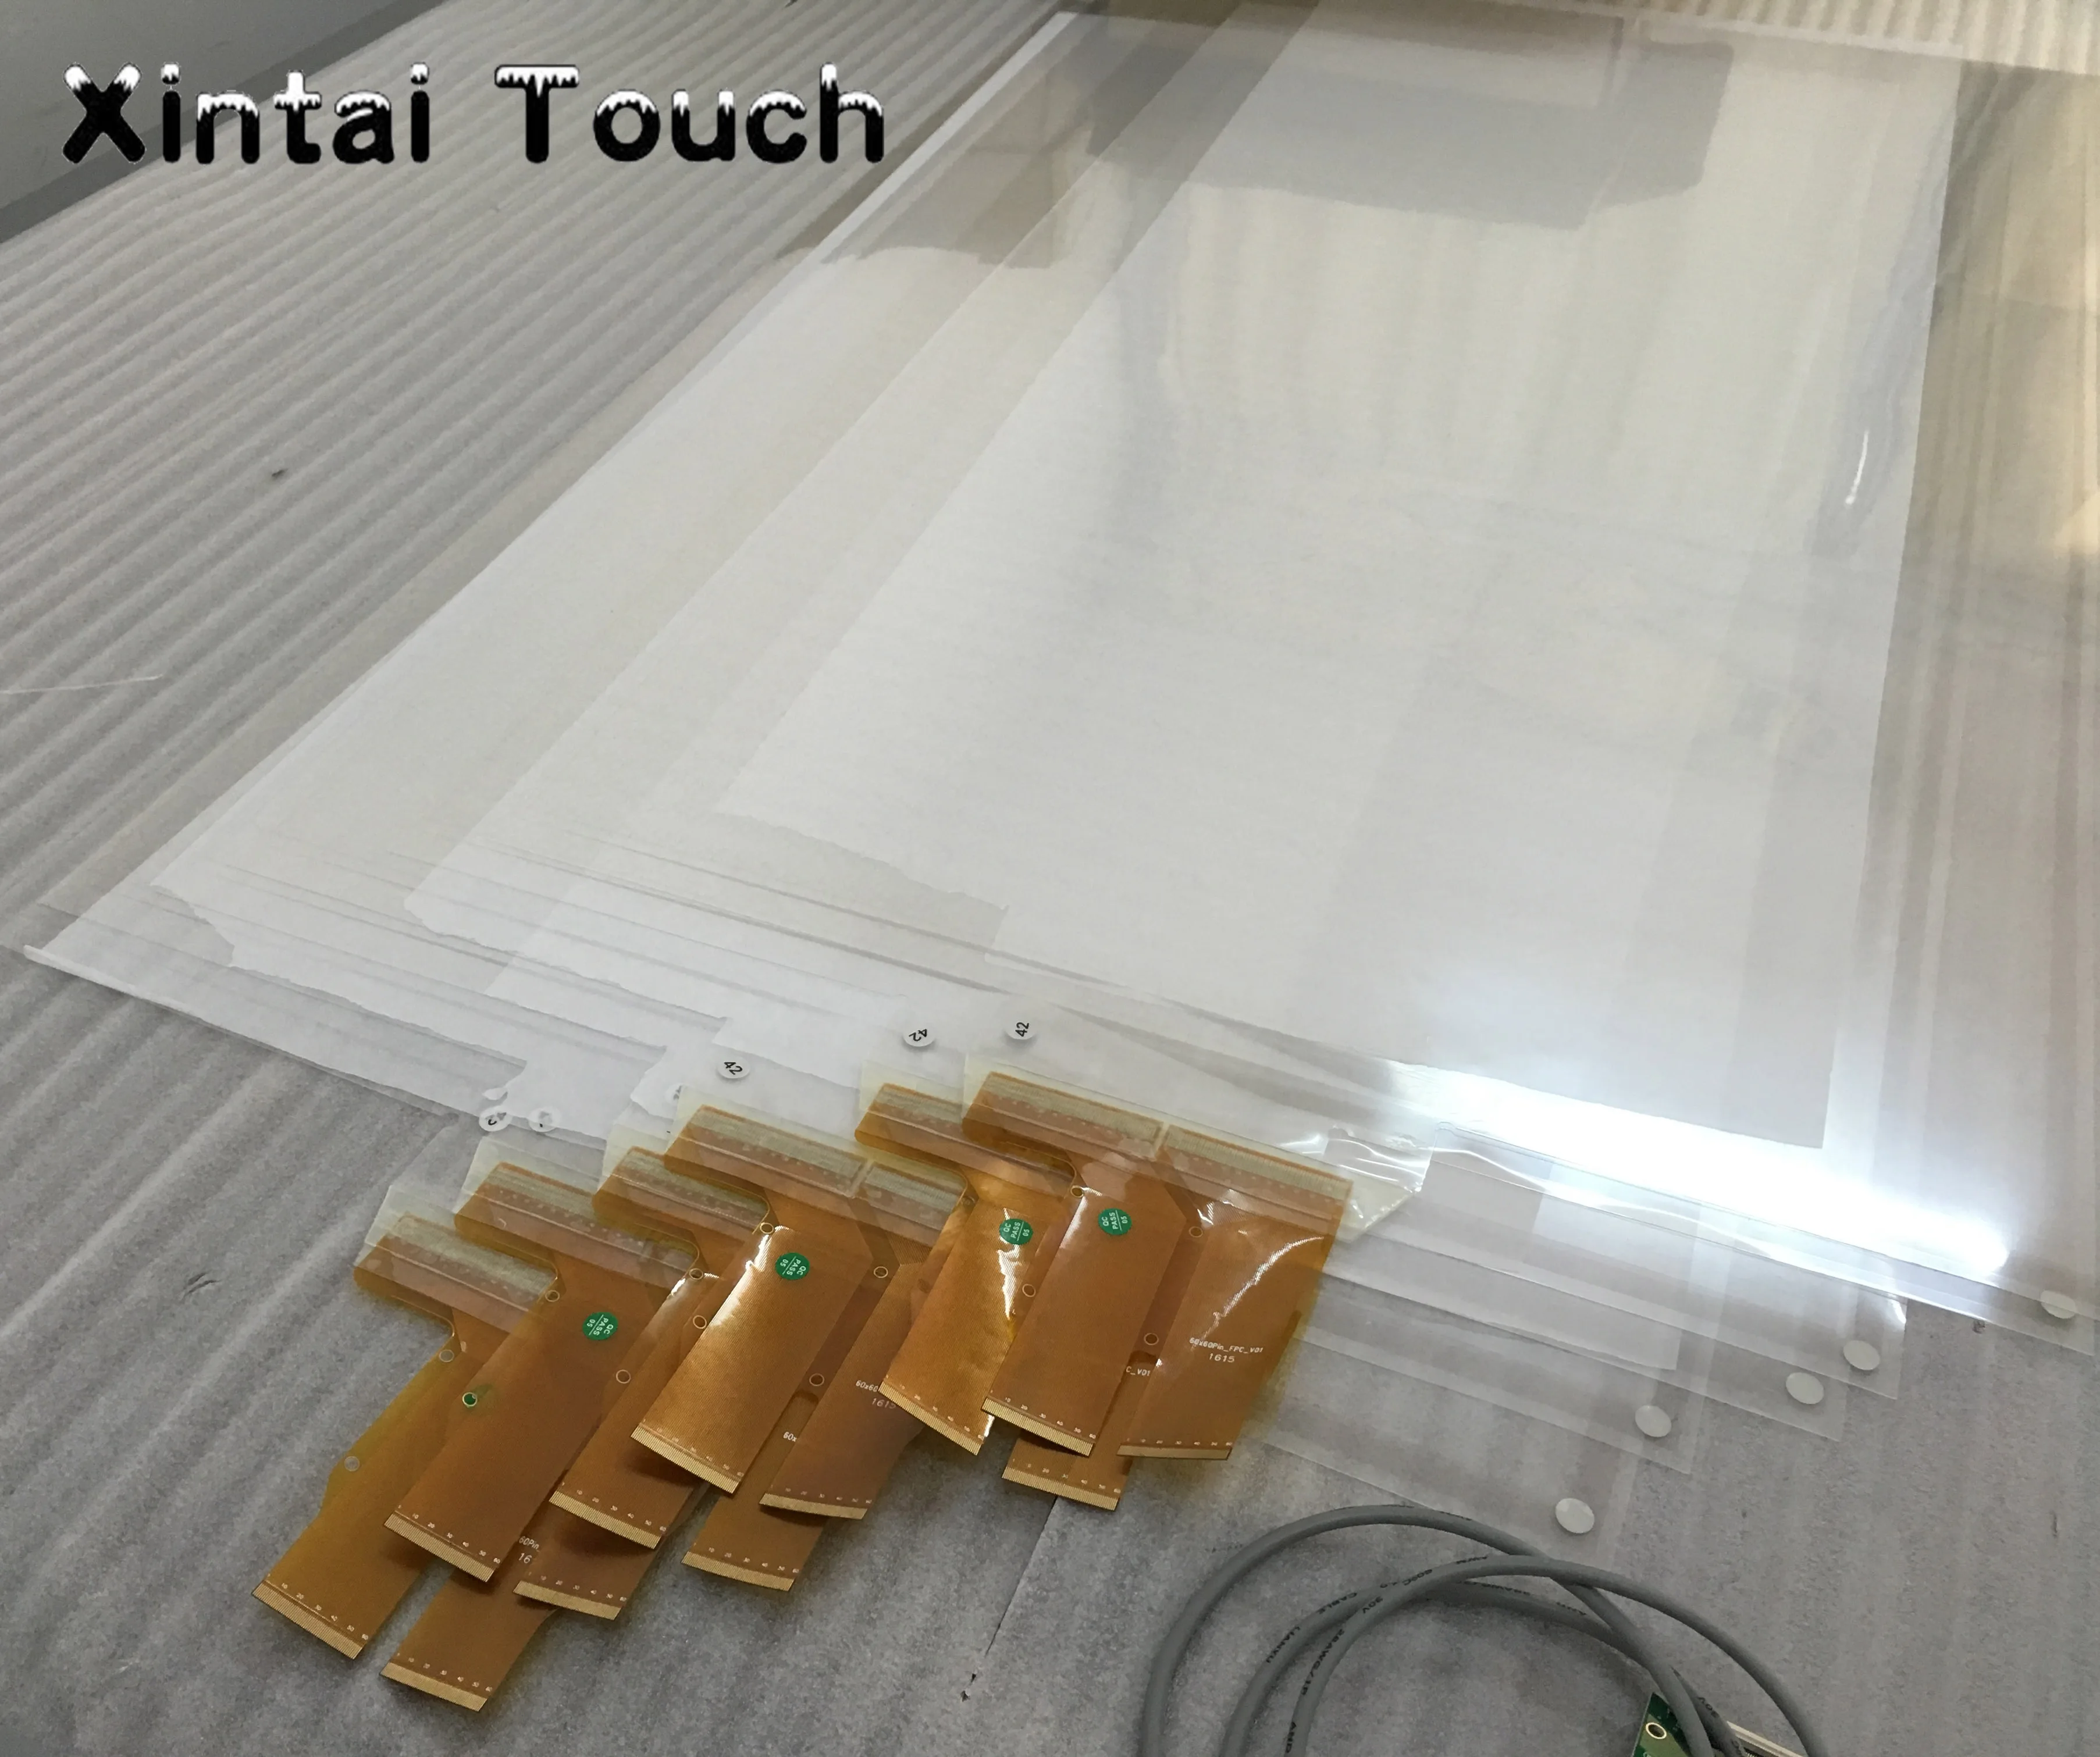 60 дюймов 4 балла интерактивная сенсорная пленка из фольги через стеклянное окно магазин